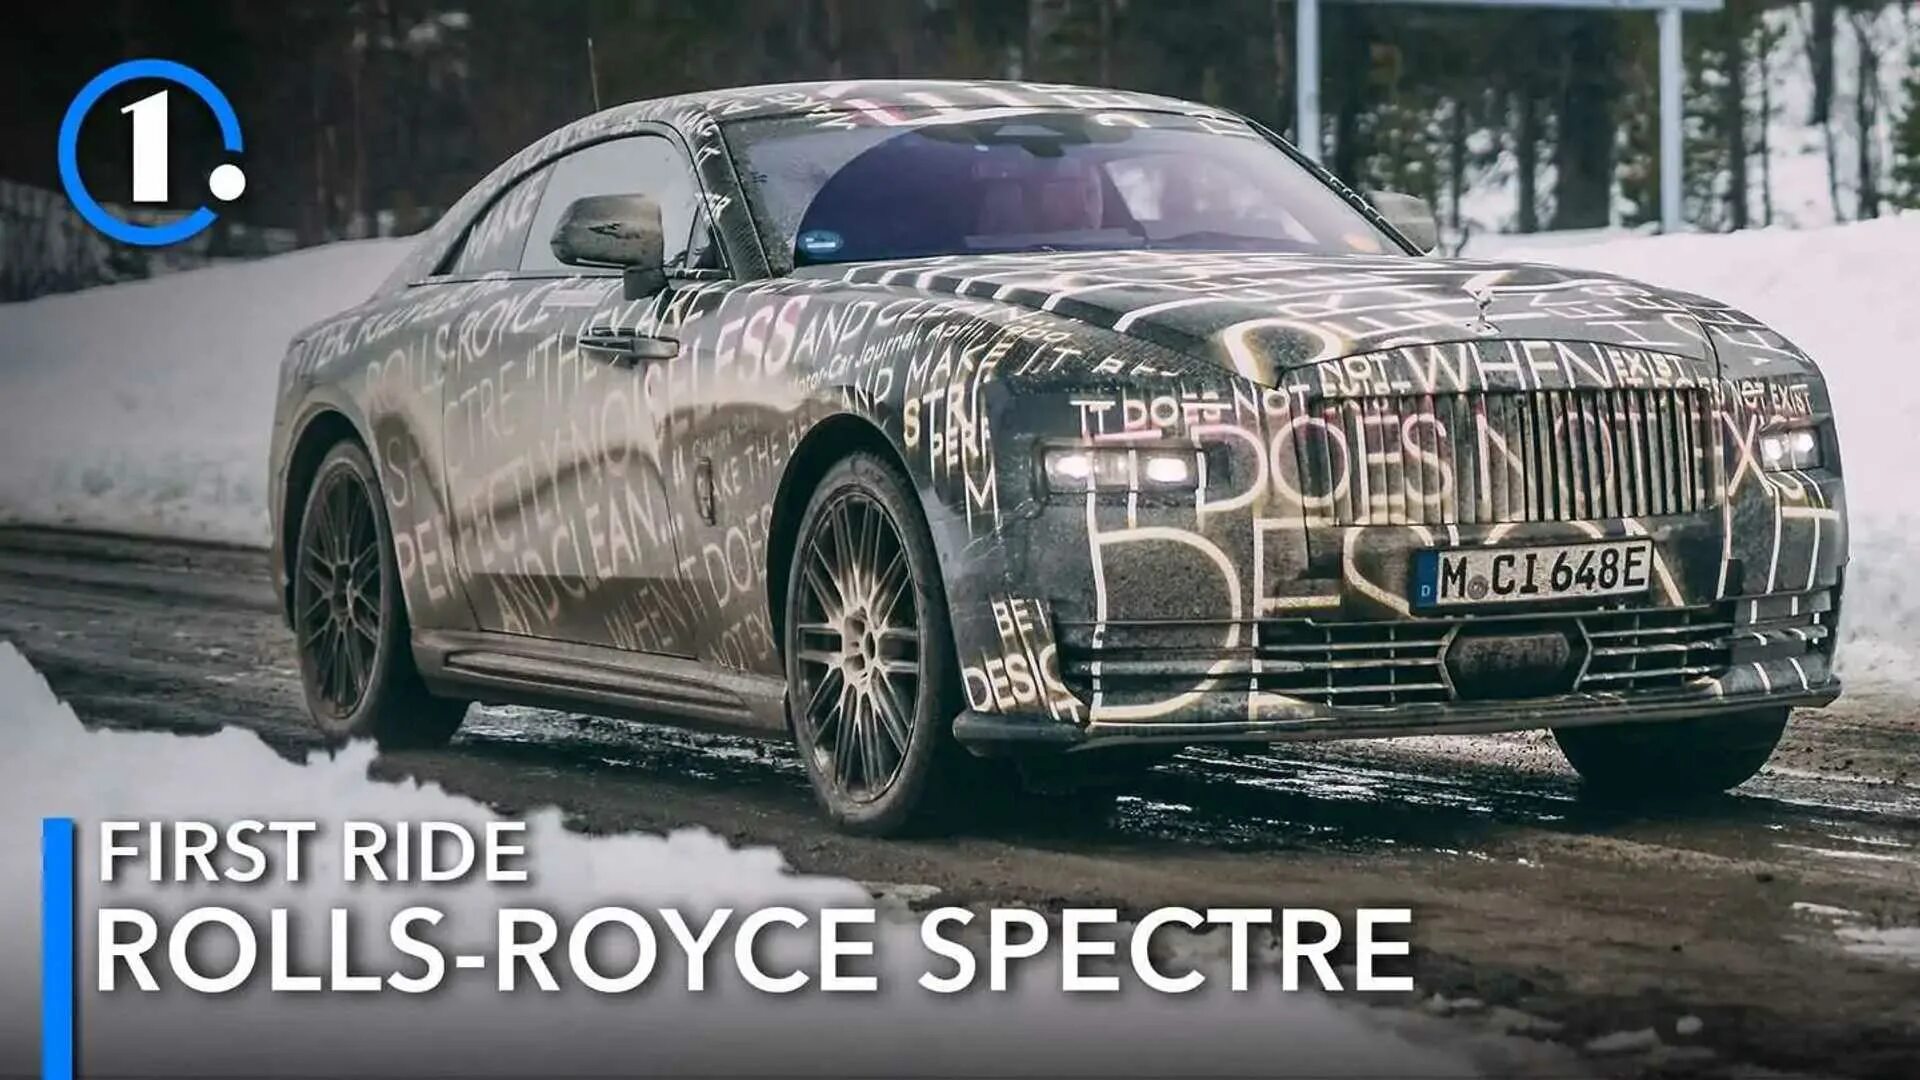 Rr spectre. Роллс Ройс Spectre. Rolls Royce Spectre резина. Rolls Royce Spectre салон. Роллс Ройс Spectre новый.